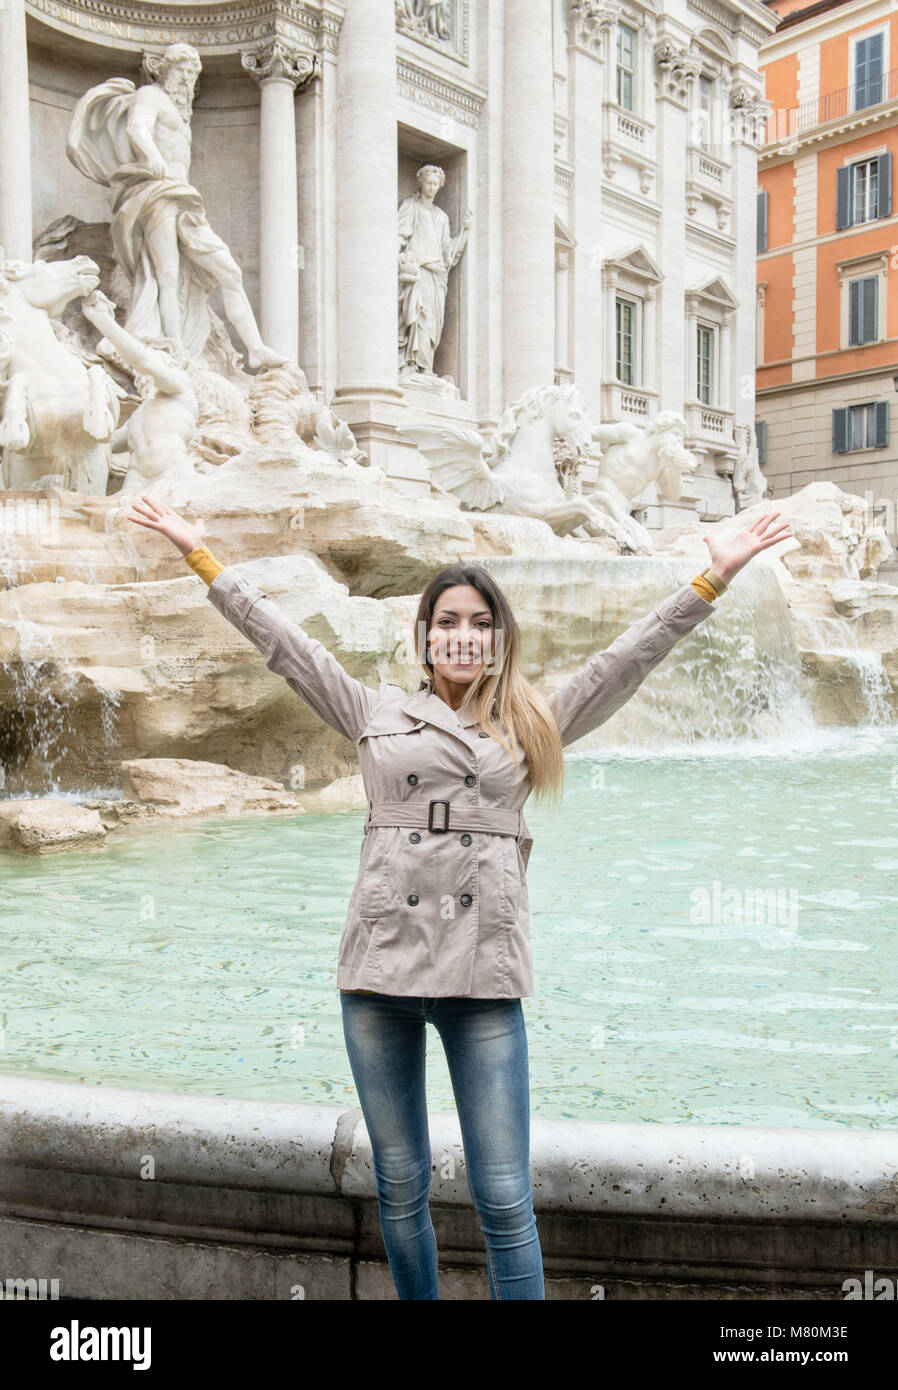 Junge hübsche Frauen kaukasischen Touristische lächelnd die Arme mit dem Trevi Springbrunnen im Hintergrund, Rom monument Sehenswürdigkeiten Italien Stockfoto